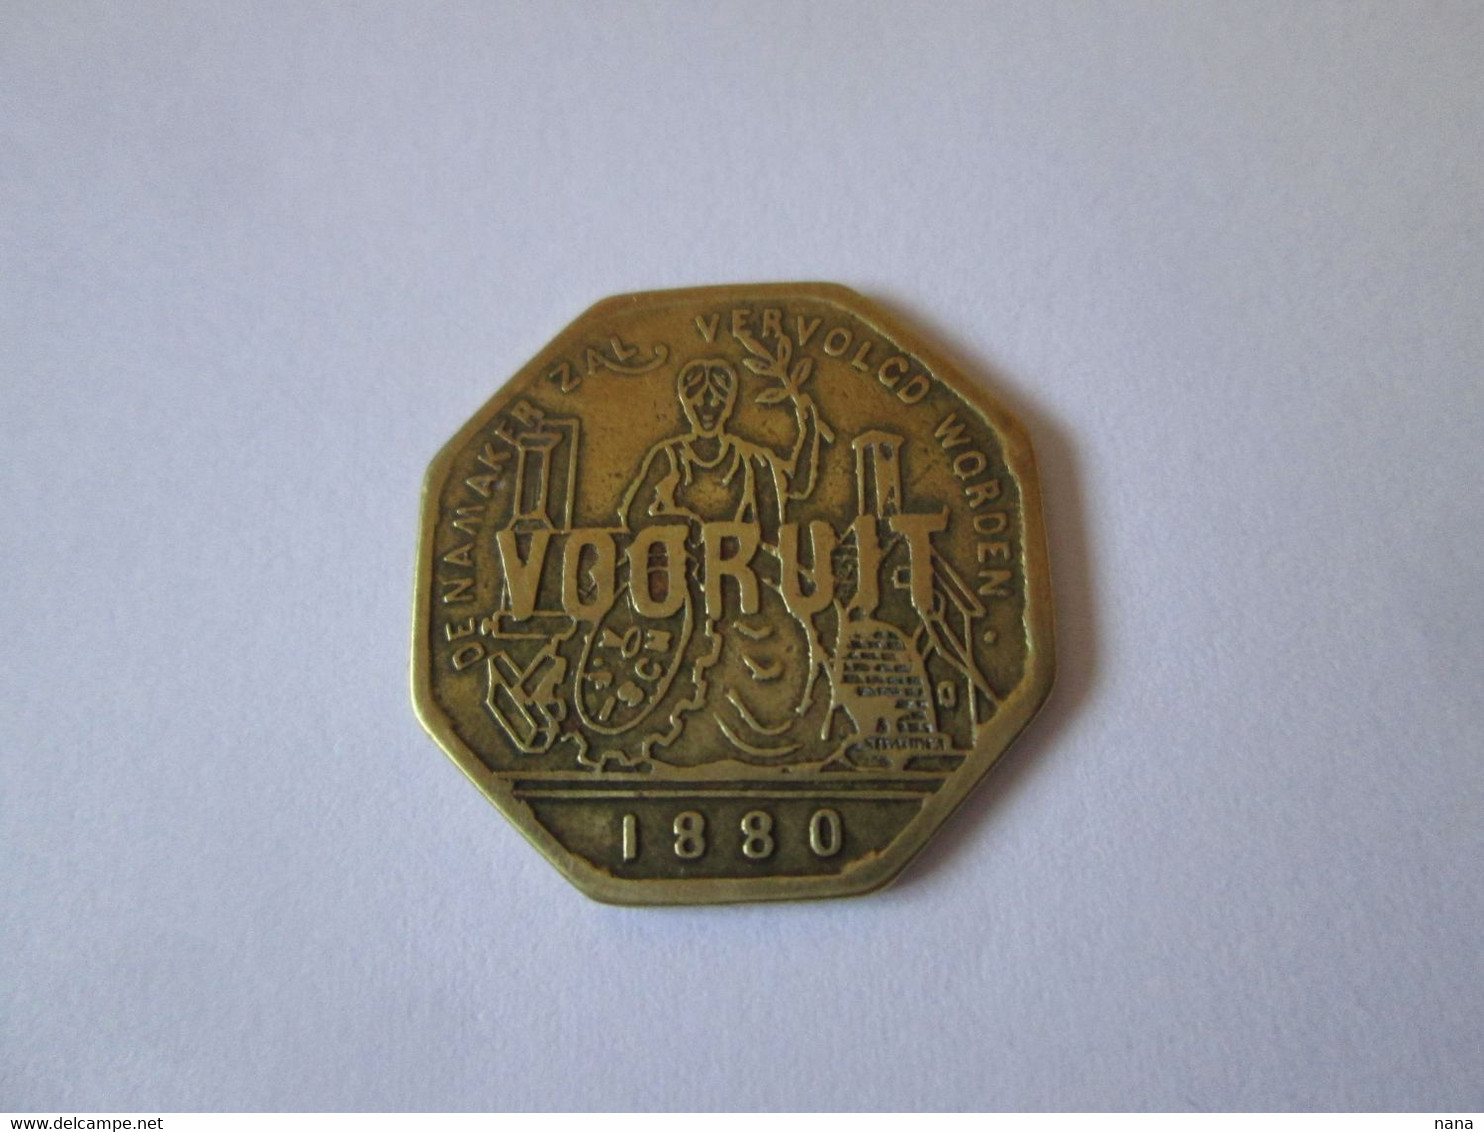 Belgique Jeton Bronze De Necessite Vooruit-1 Broodkaart 1880/ Belgium Bronze Token Of Necessity Vooruit-1Broodkaart 1880 - Monedas / De Necesidad